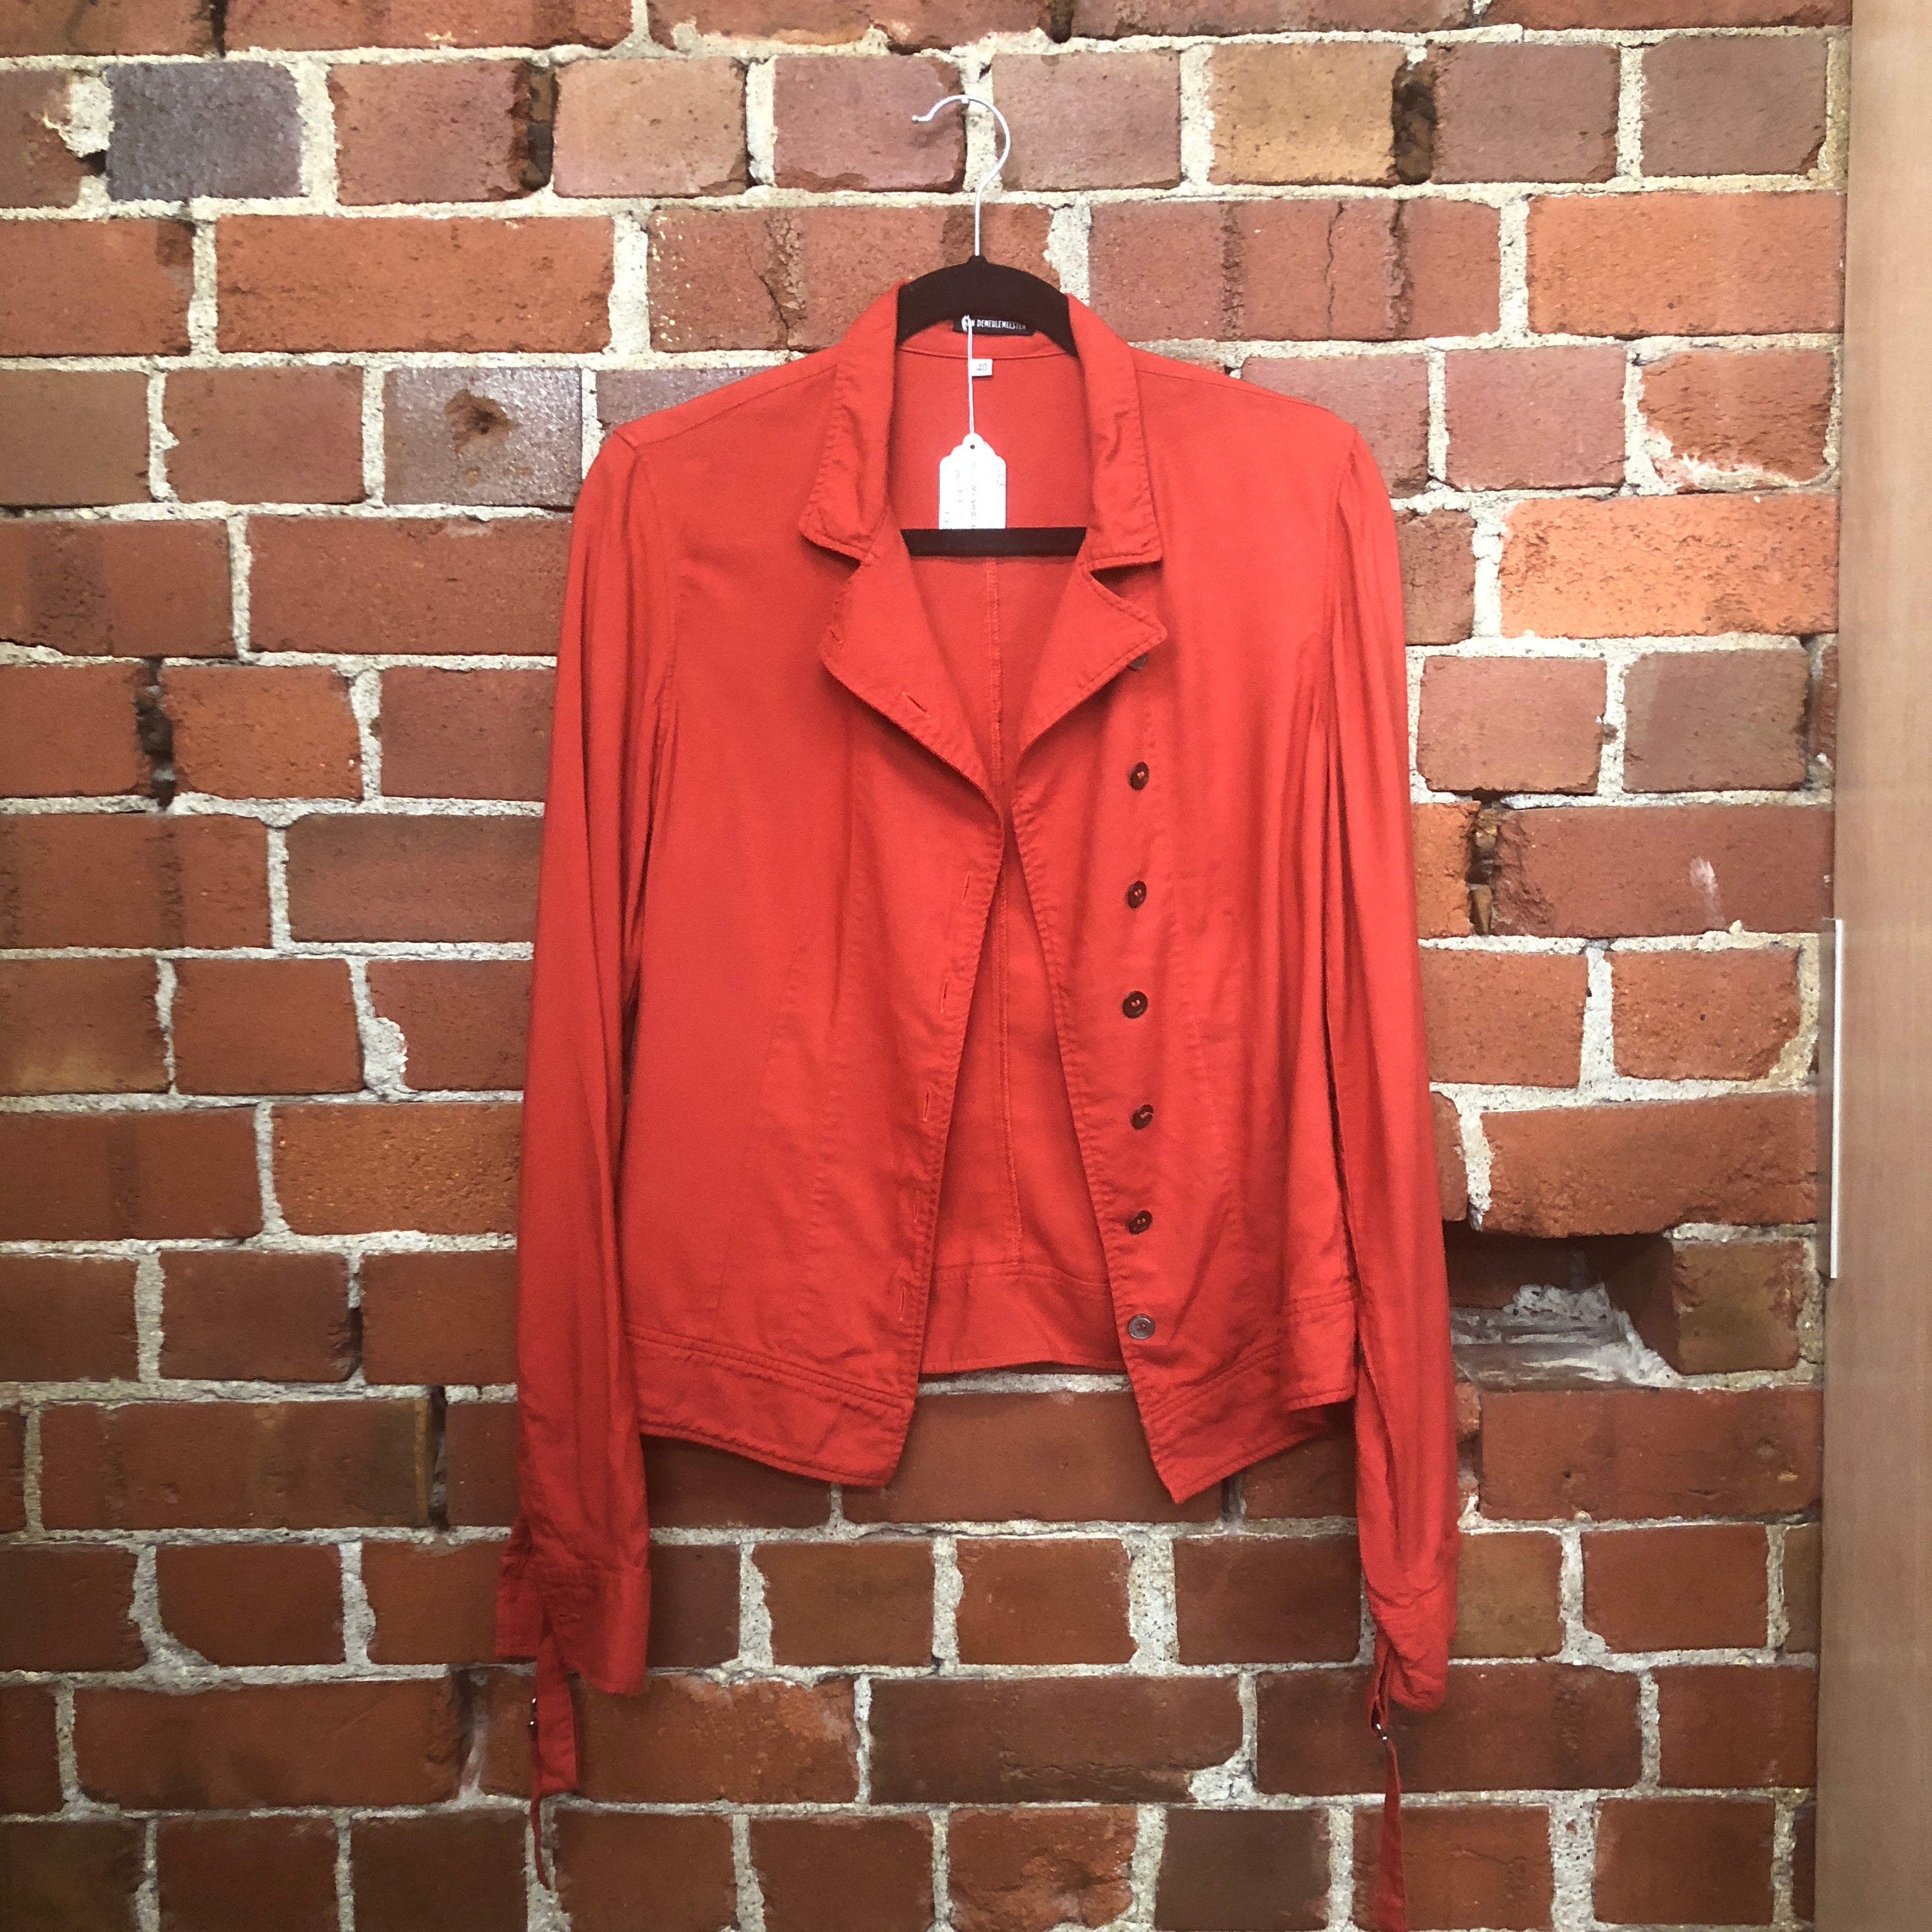 ANN DEMULEMEESTER cotton shirt jacket